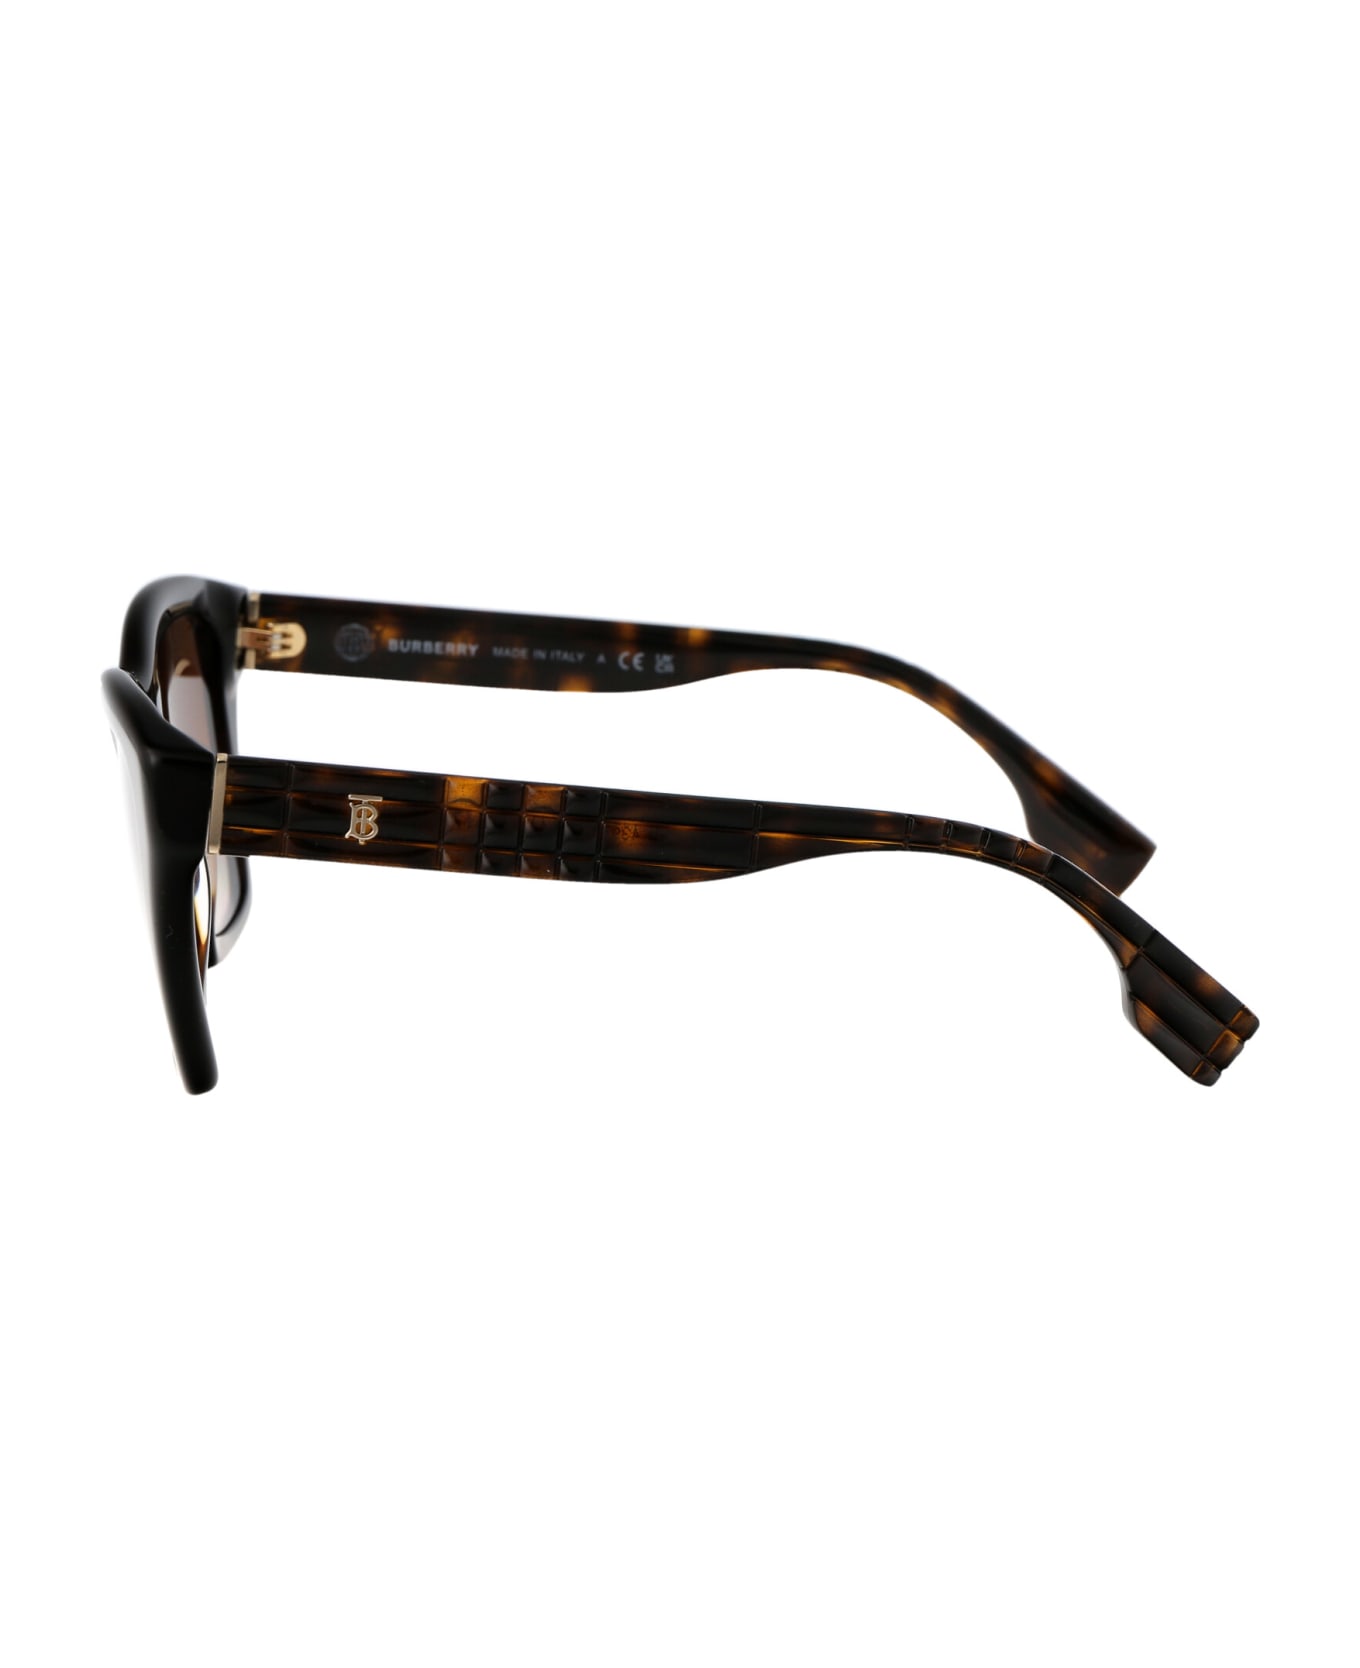 Burberry Eyewear Arden Sunglasses - 300213 DARK HAVANA